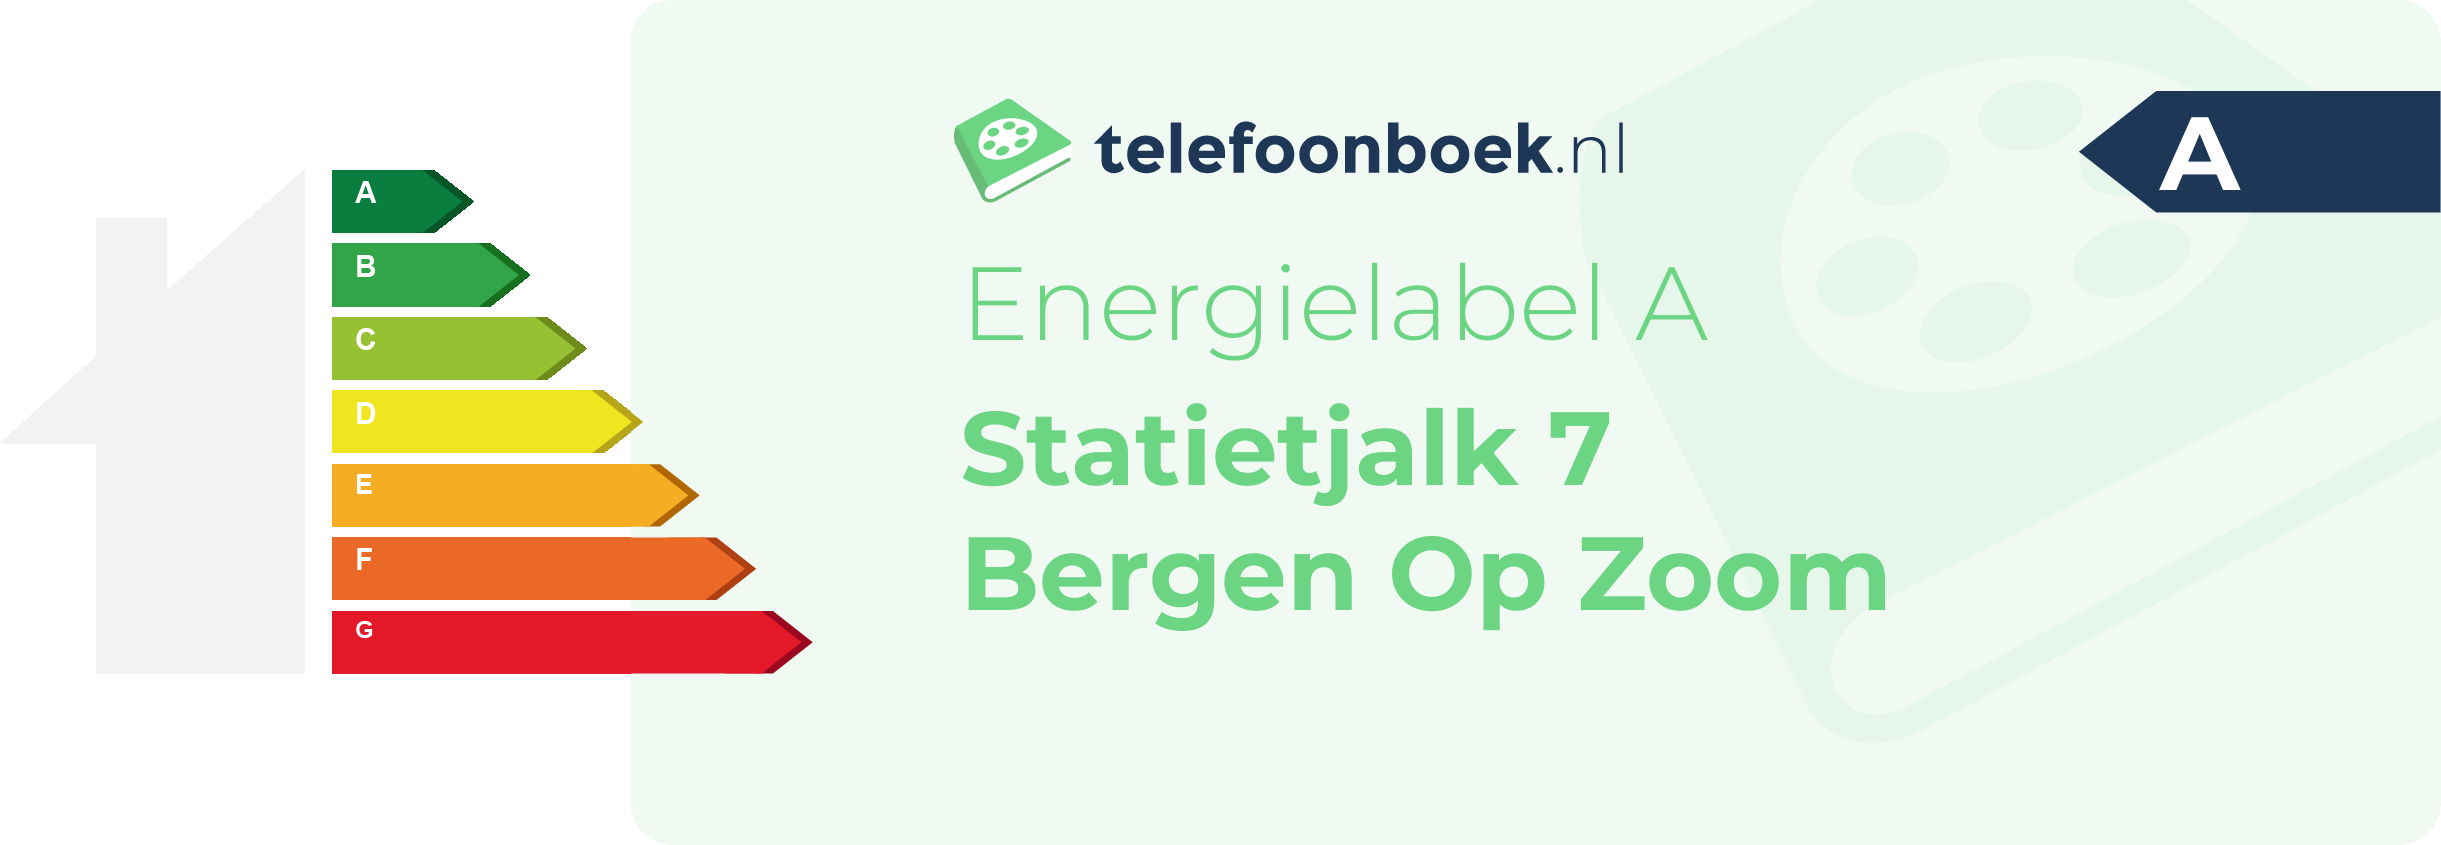 Energielabel Statietjalk 7 Bergen Op Zoom